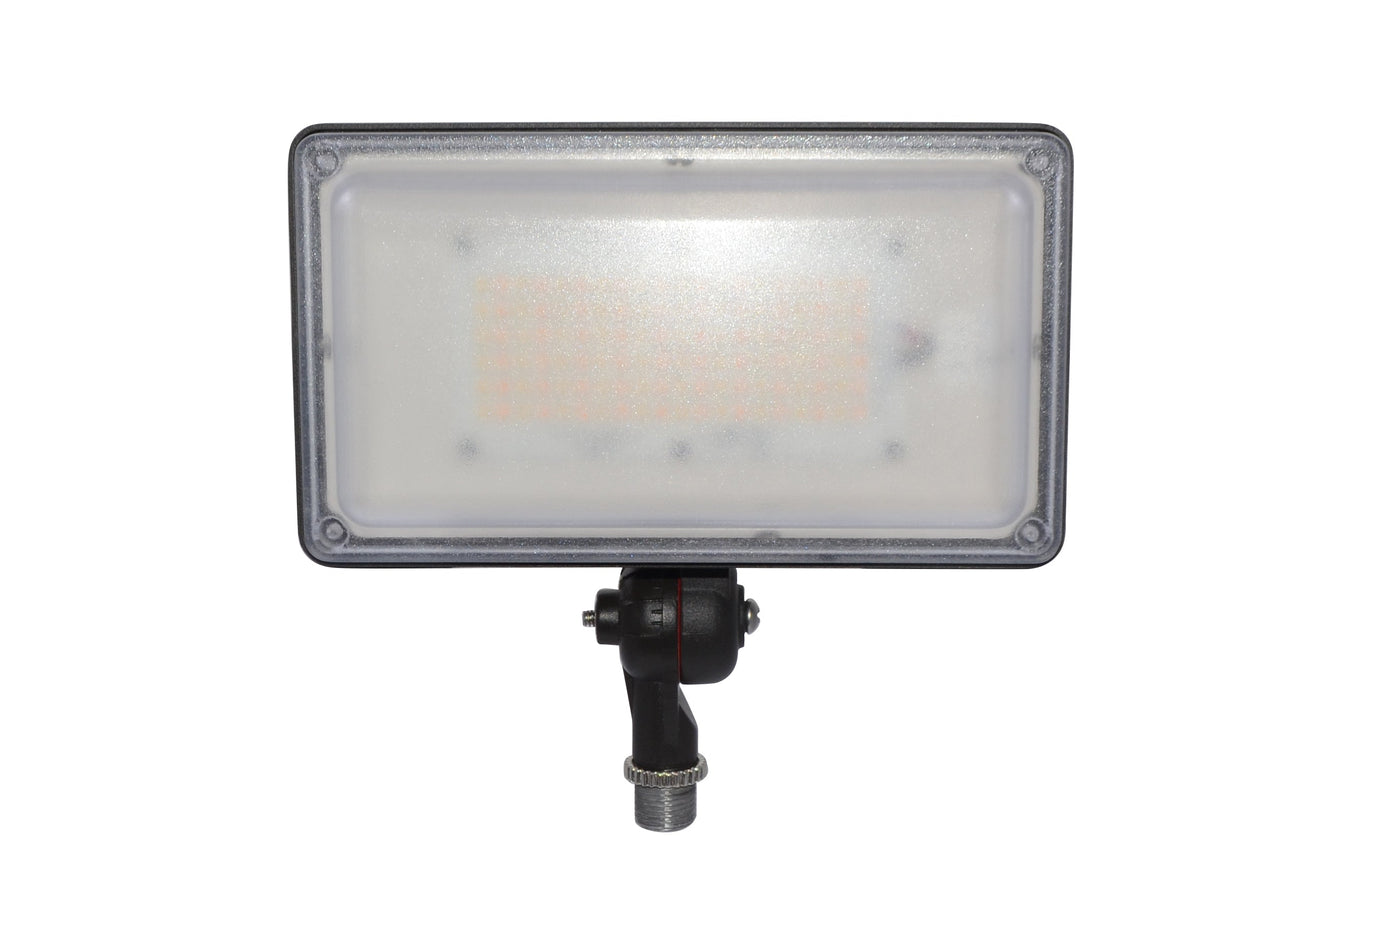 LED Flood Light, G2, 47 watt, 6601 Lumens, 120-277V, CCT Selectable